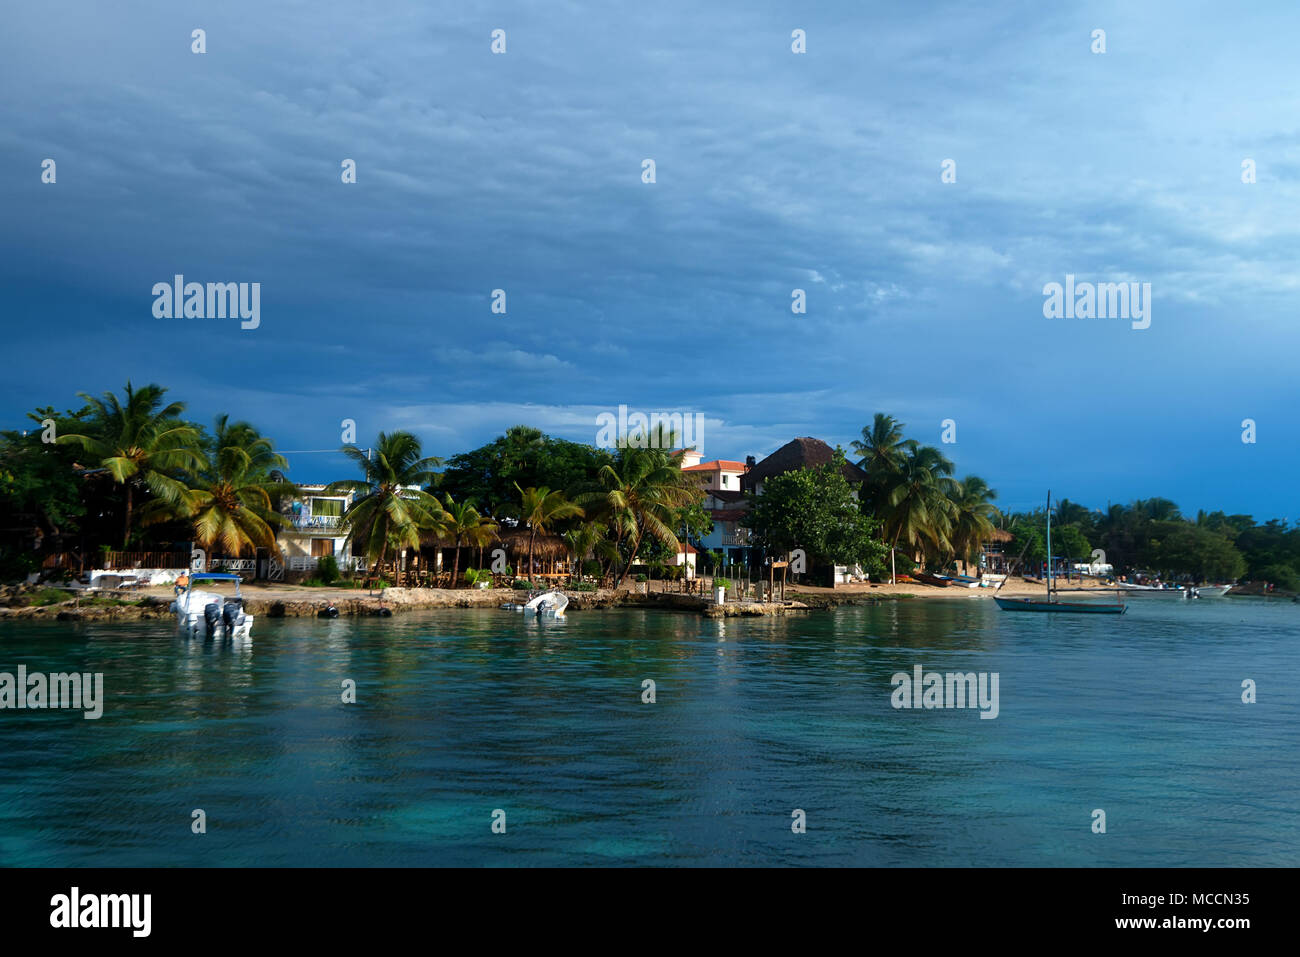 Isla Saona costa con hoteles vista desde el agua Foto de stock